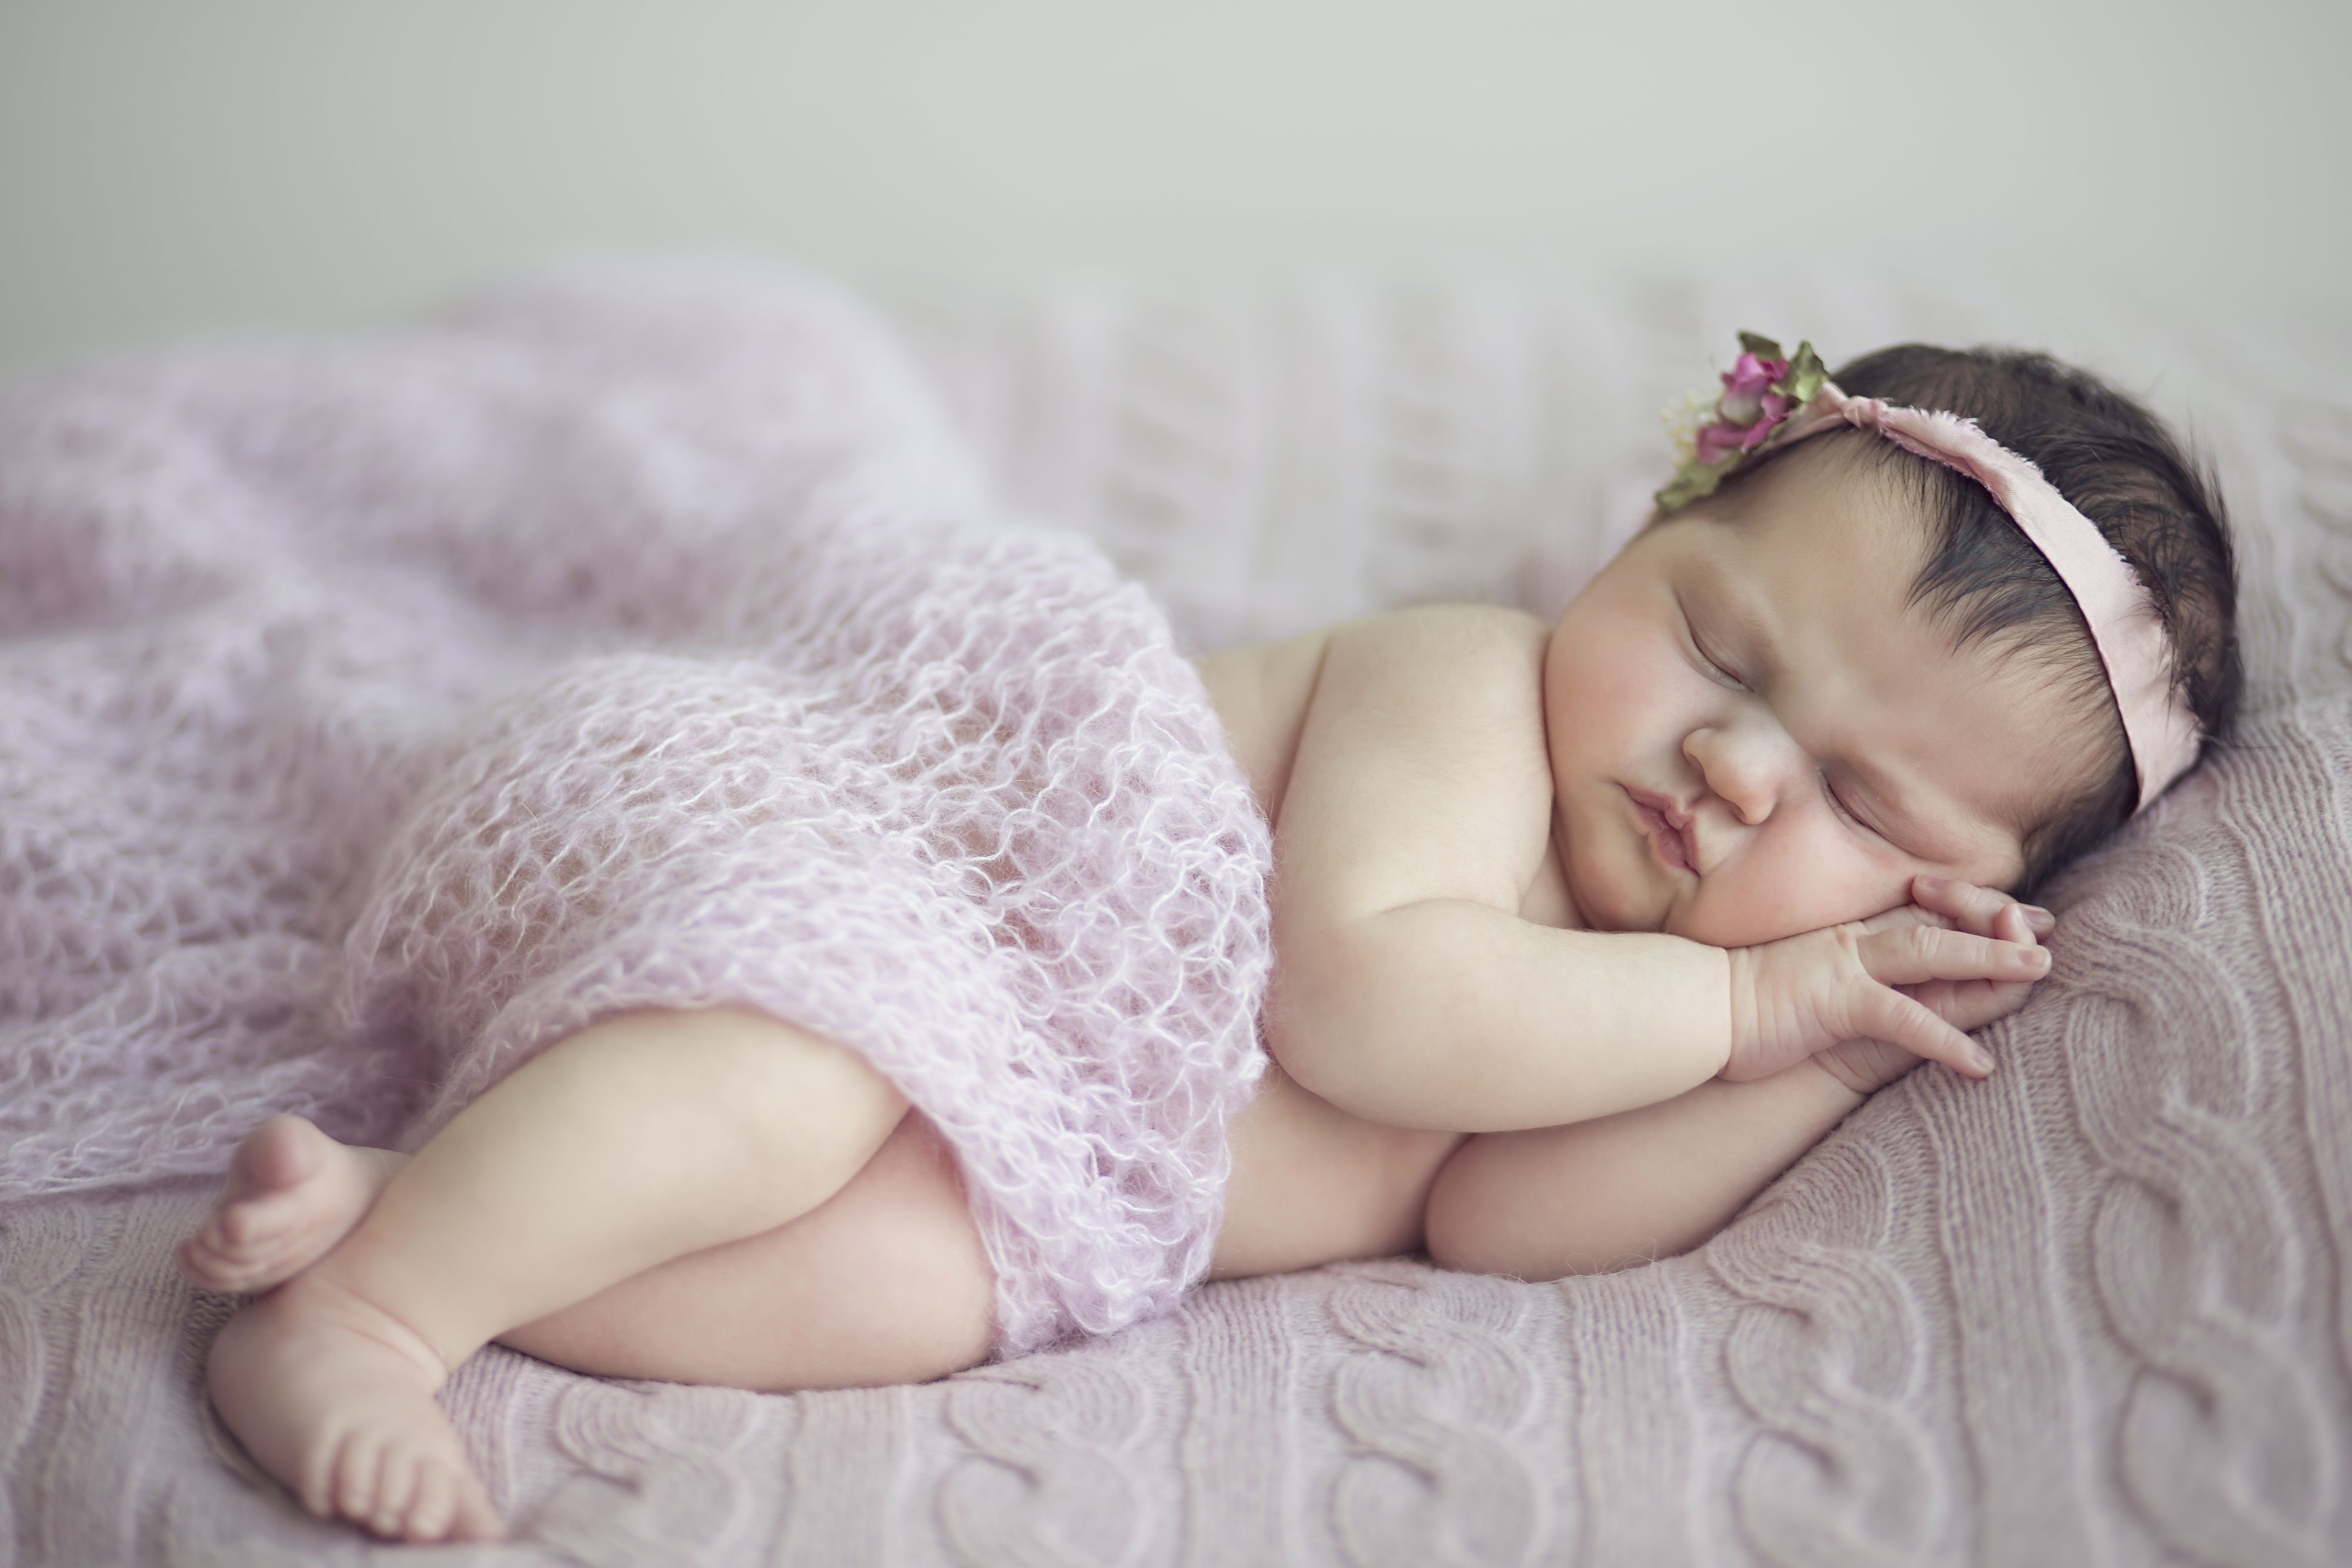 K, #Sleeping, #Cute baby, #Baby girl. Mocah.org HD